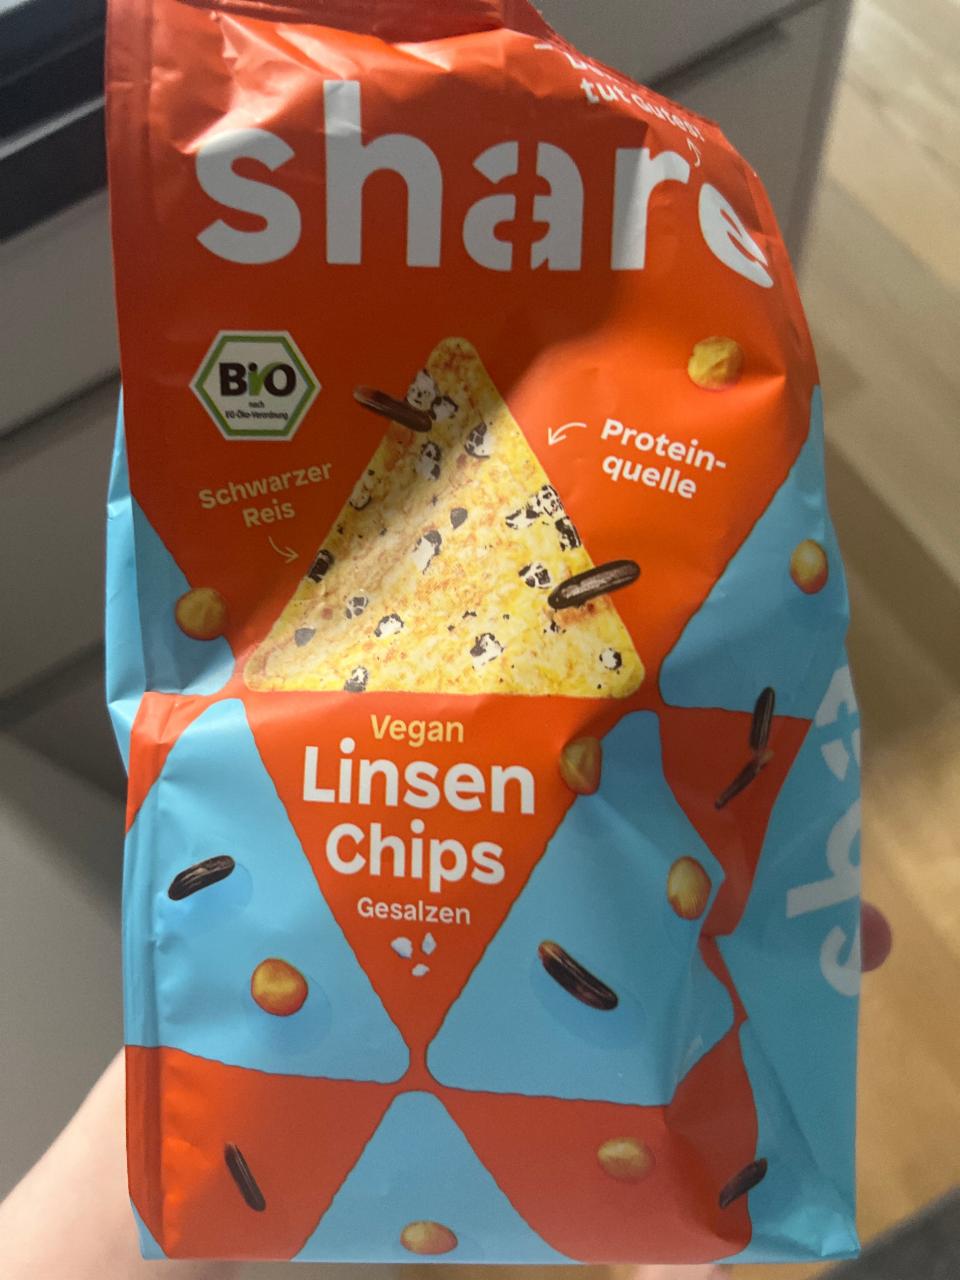 Фото - веганские чипсы Linsen Chips с воздушным темным рисом Share